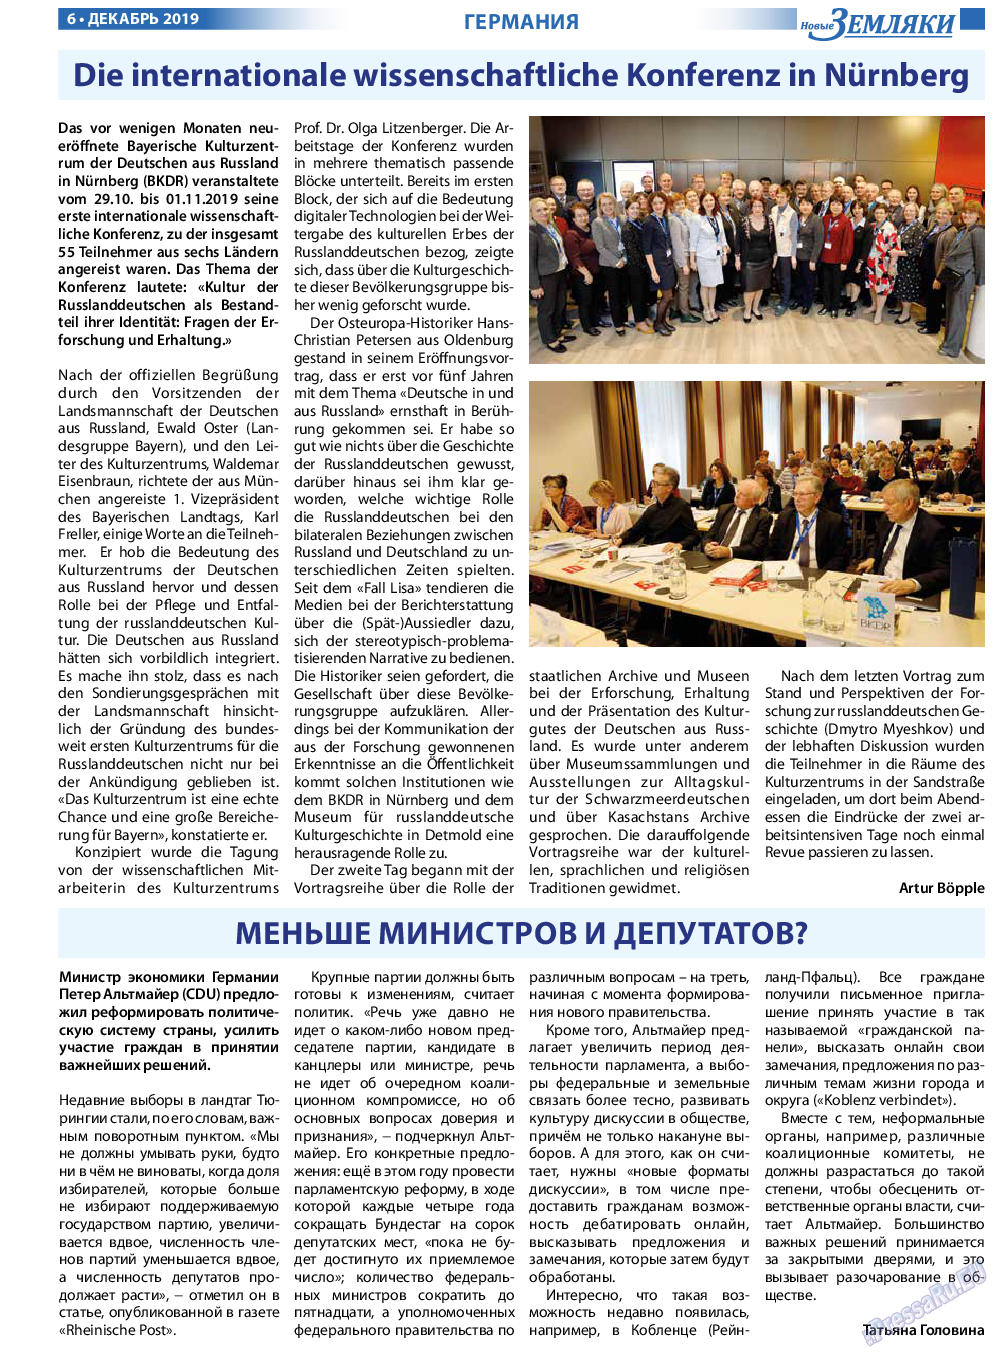 Новые Земляки, газета. 2019 №12 стр.6